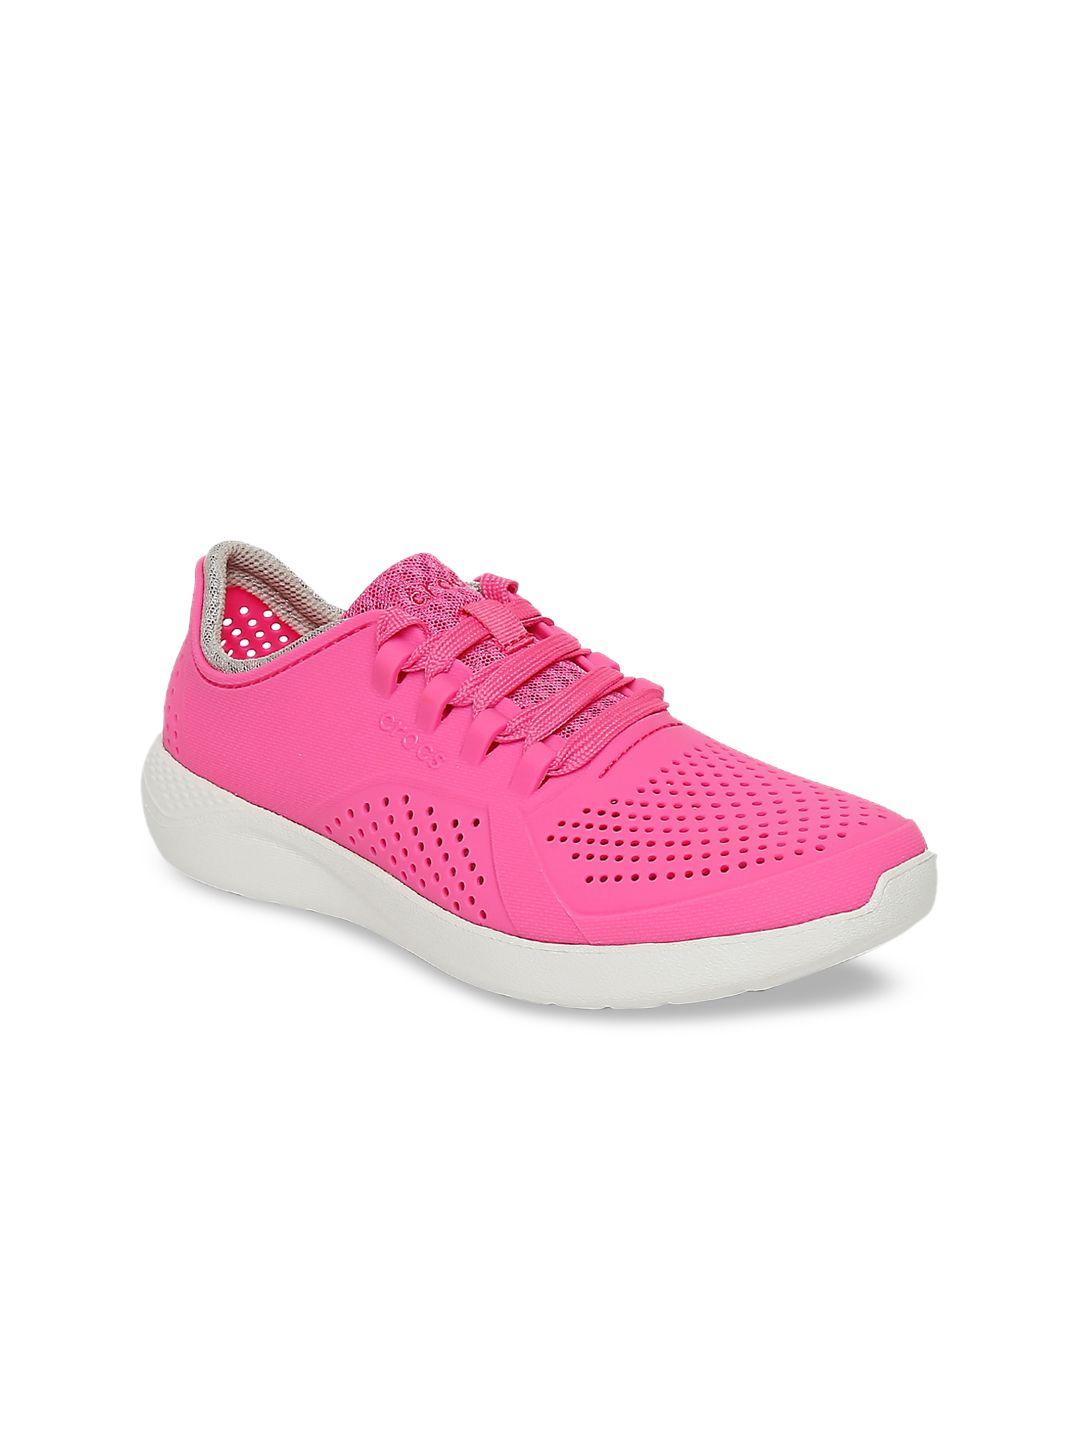 crocs women pink literide sneakers